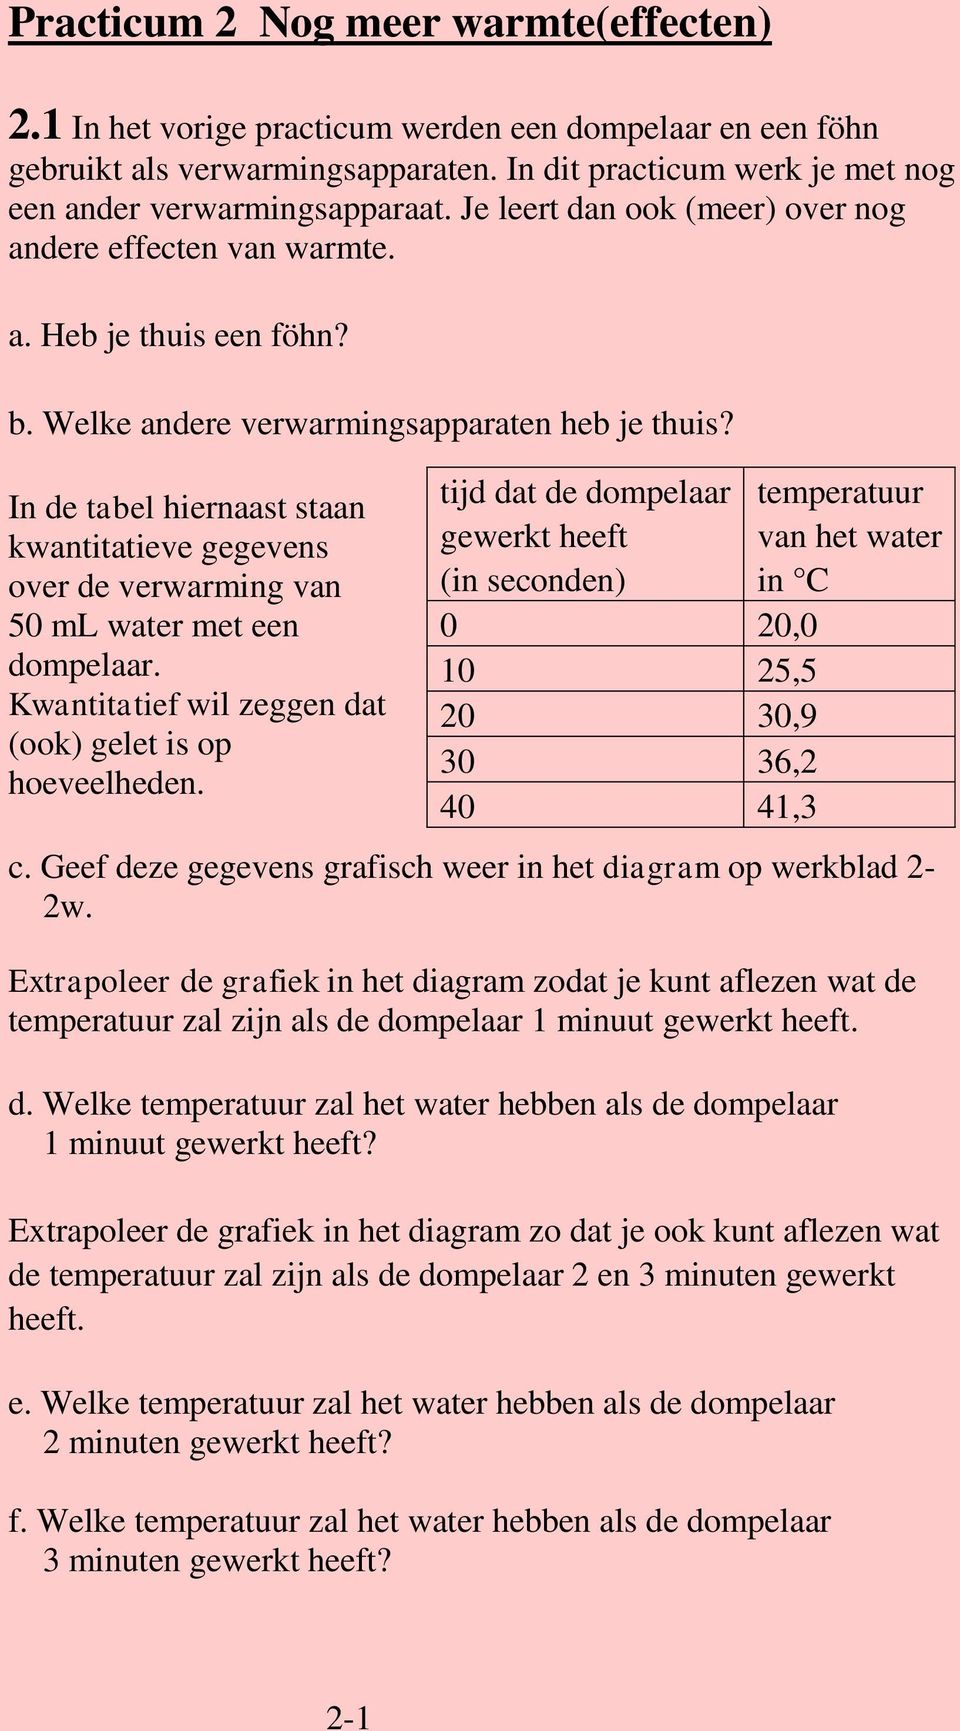 In de tabel hiernaast staan kwantitatieve gegevens over de verwarming van 50 ml water met een dompelaar. Kwantitatief wil zeggen dat (ook) gelet is op hoeveelheden.